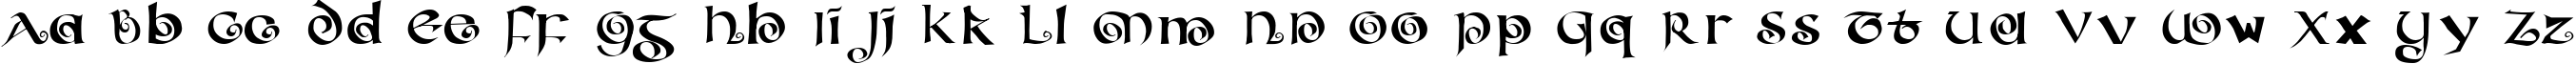 Пример написания английского алфавита шрифтом ConfettiType Medium